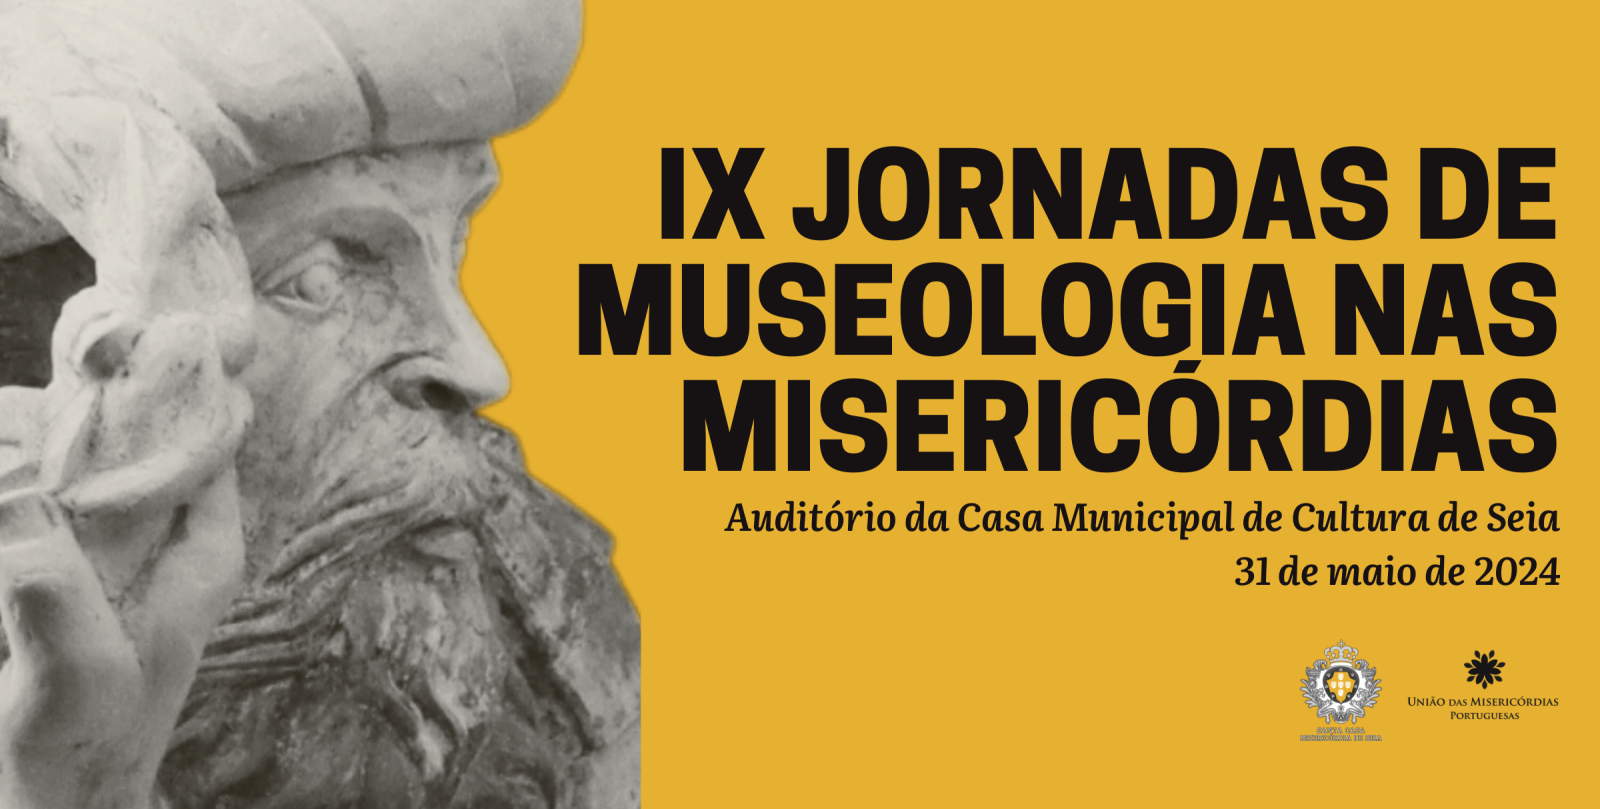 Inscrições para IX Jornadas de Museologia nas Misericórdias